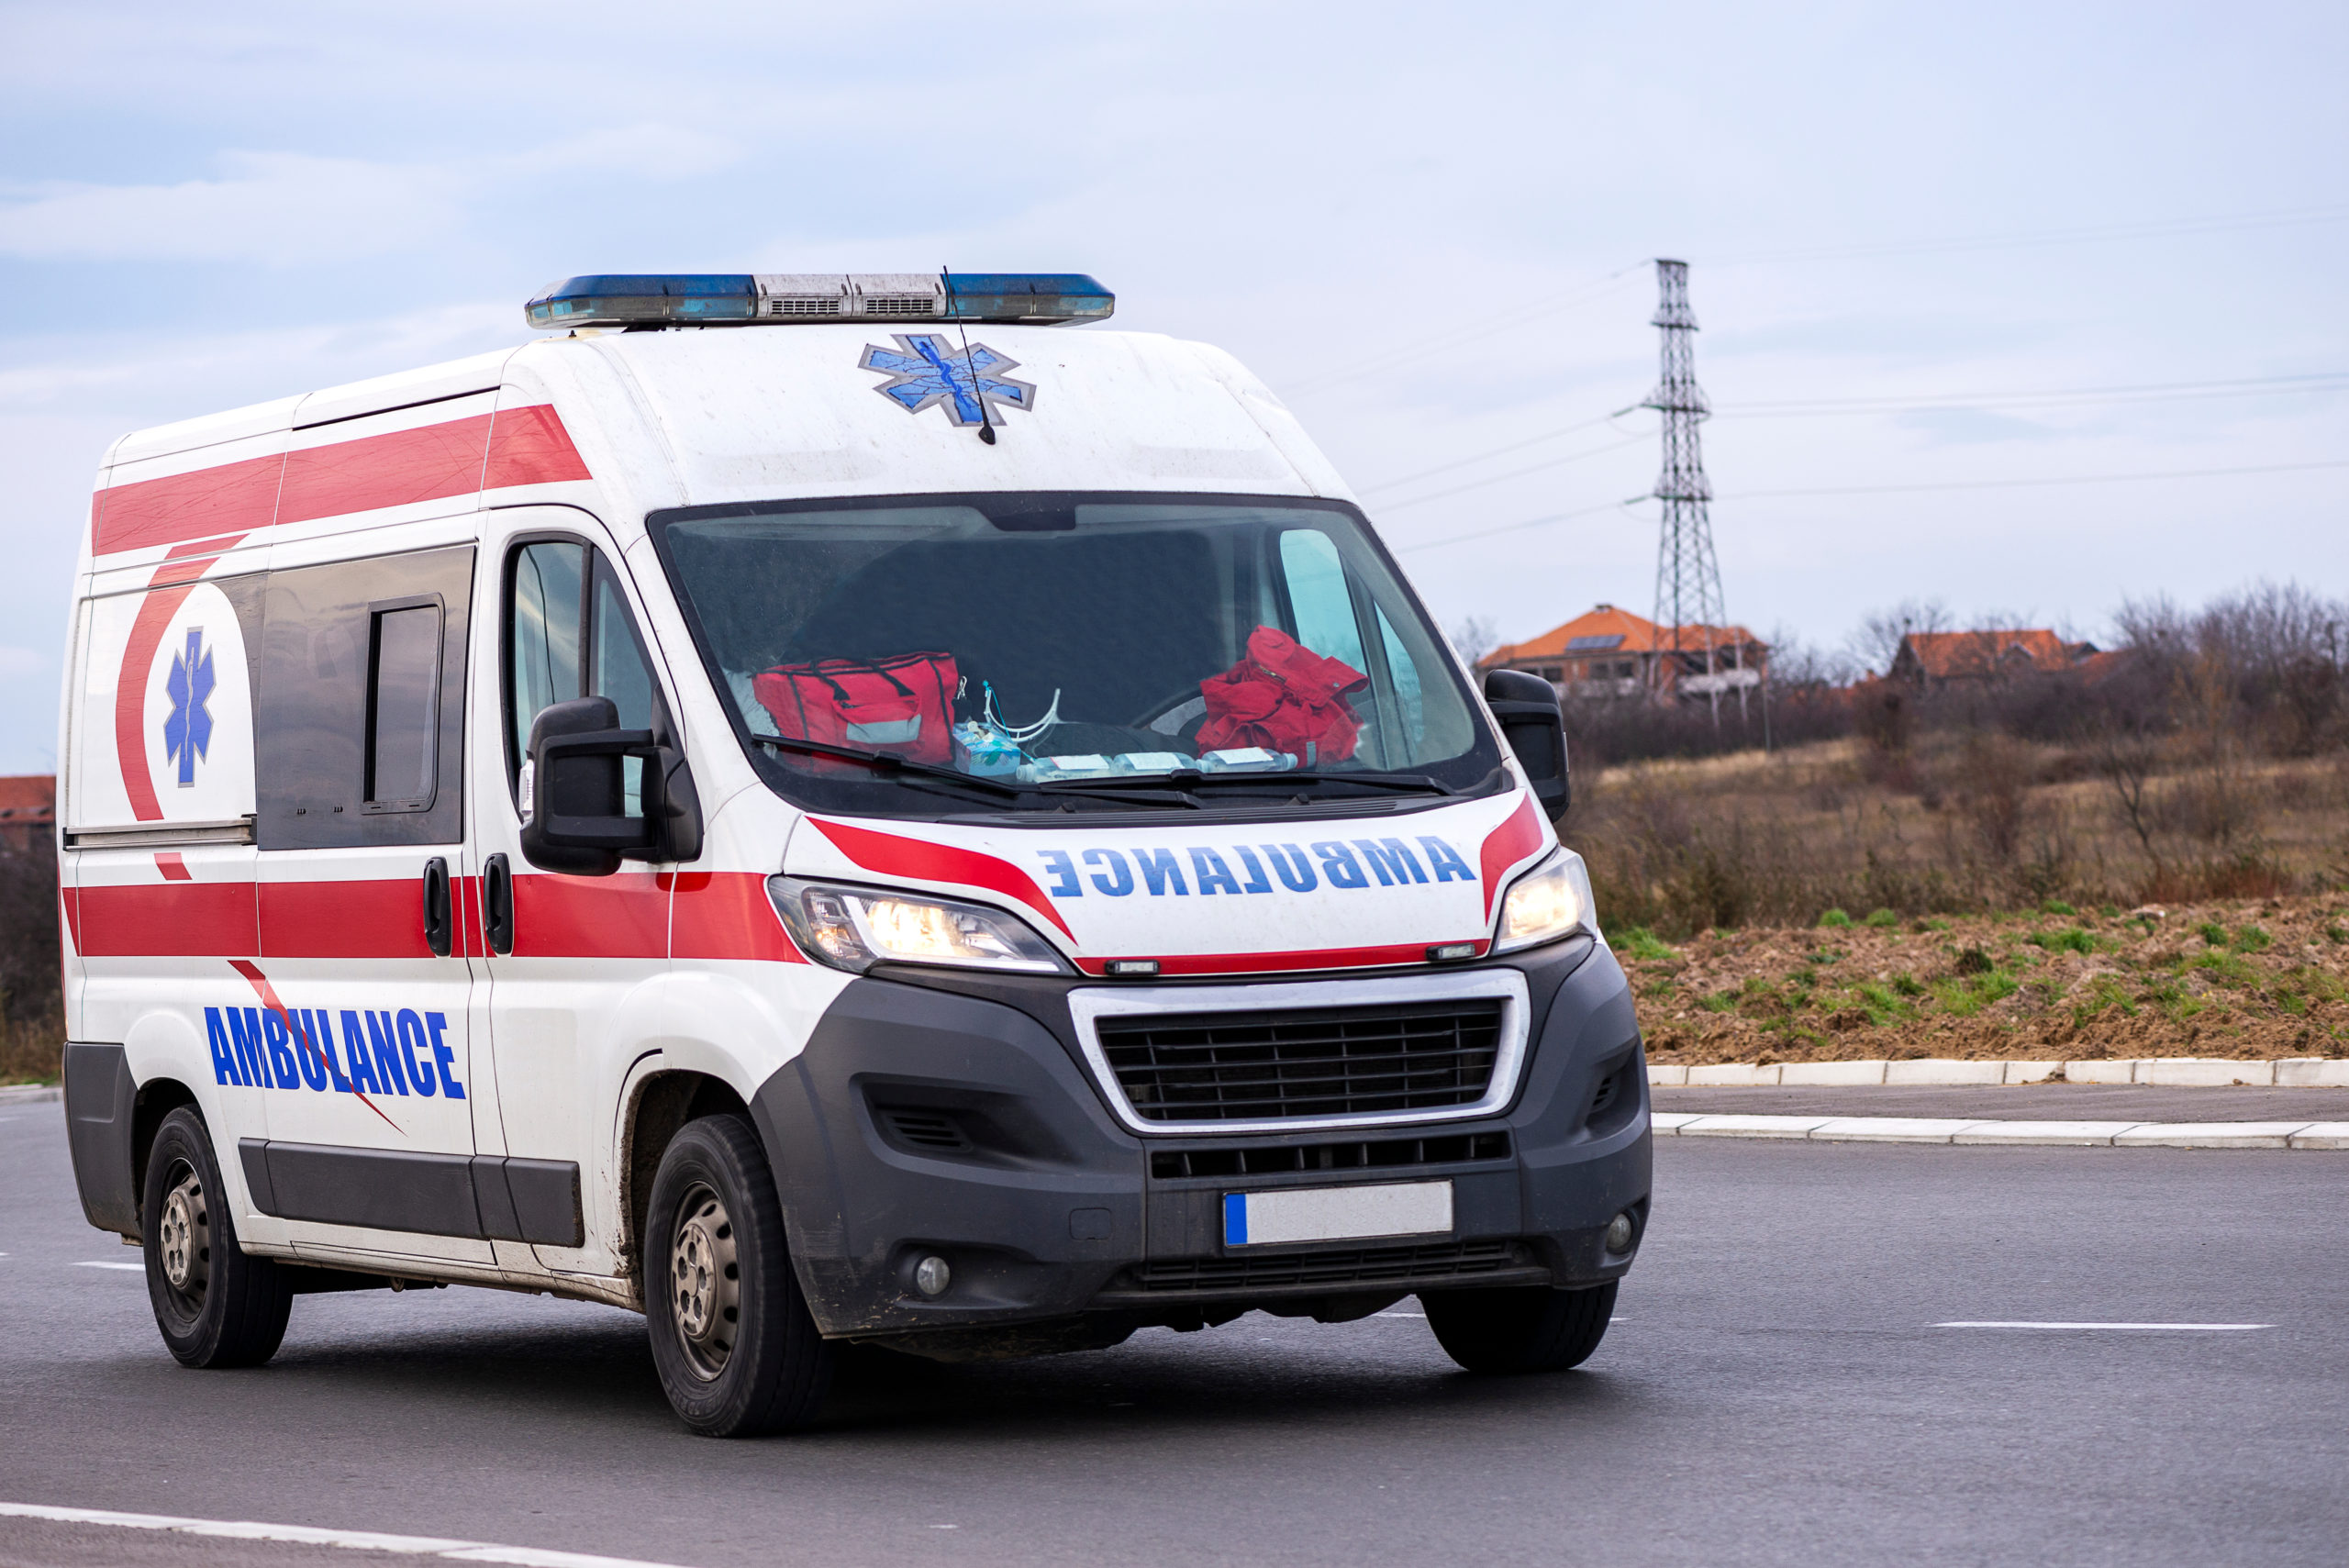 Ambulance Care Assistant: Part 2